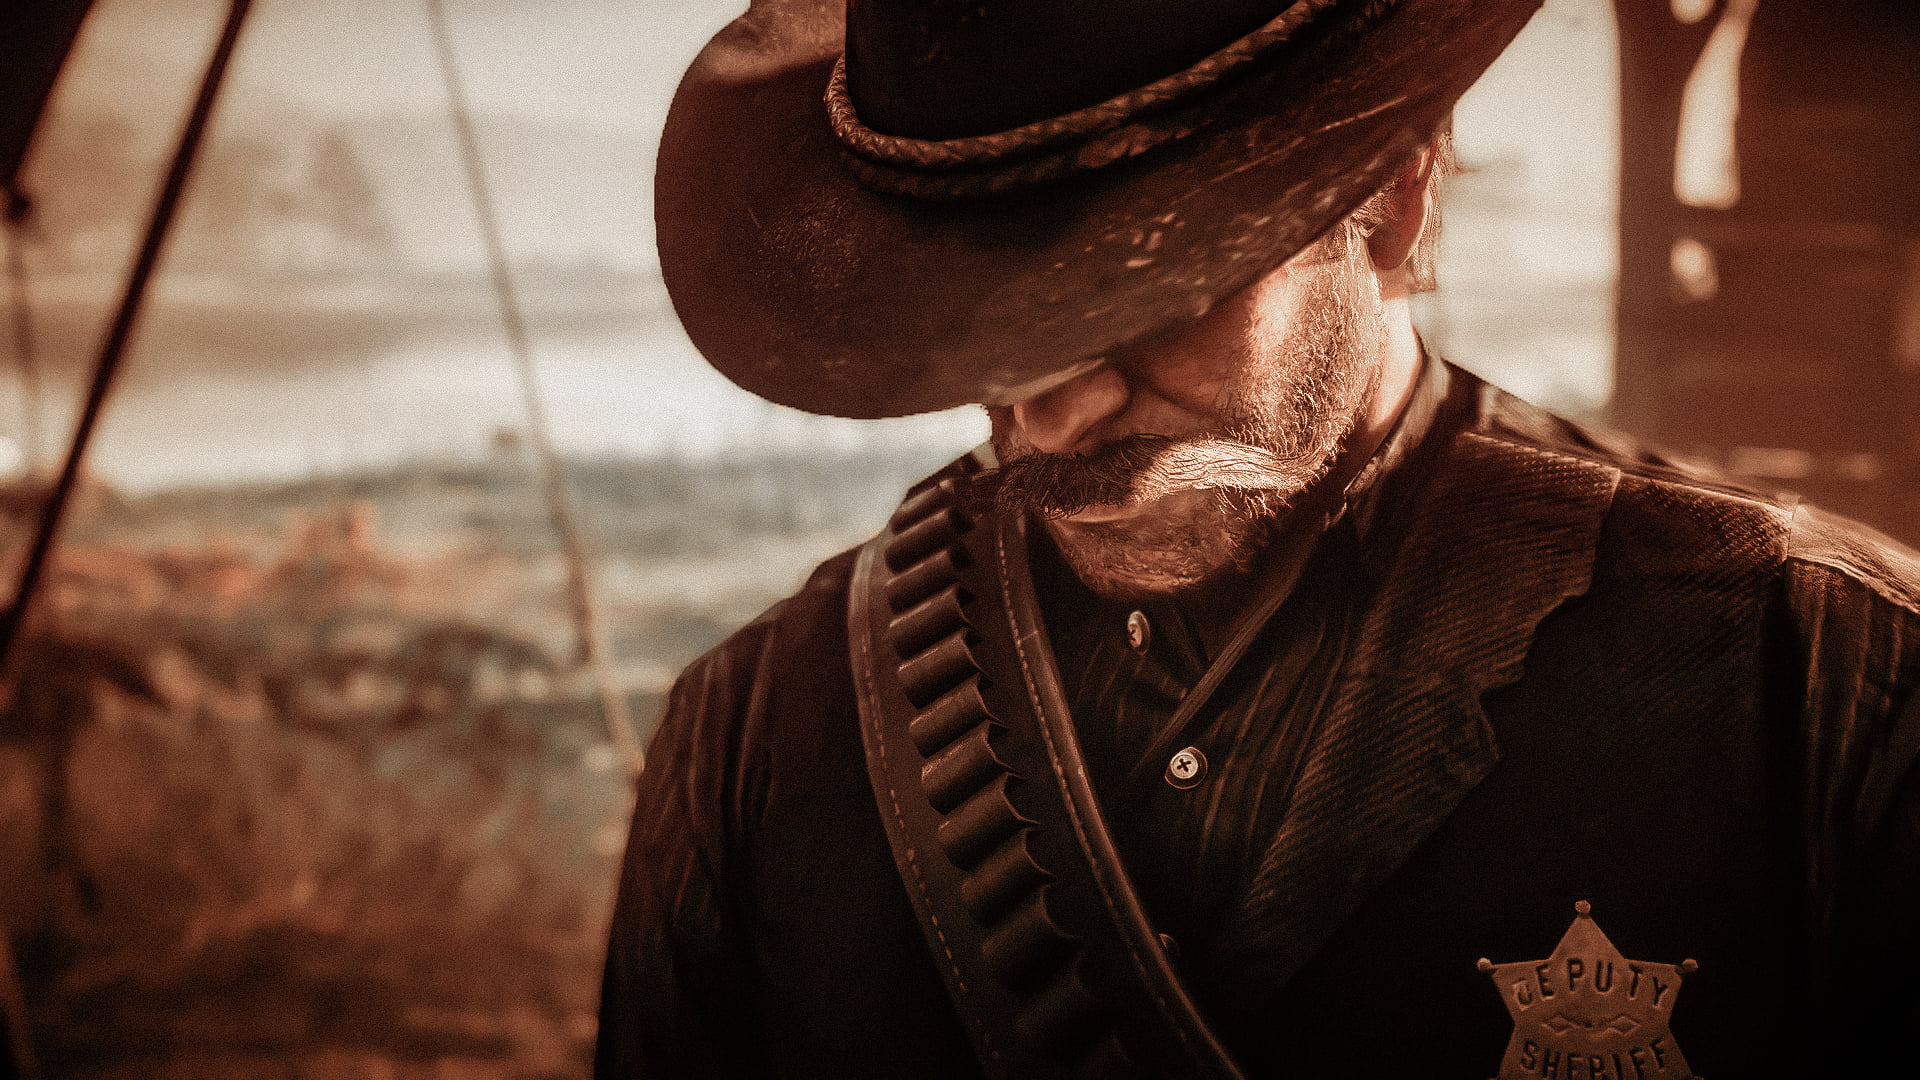 Red Dead Redemption 2, Rockstar Games, Arthur Morgan, horse